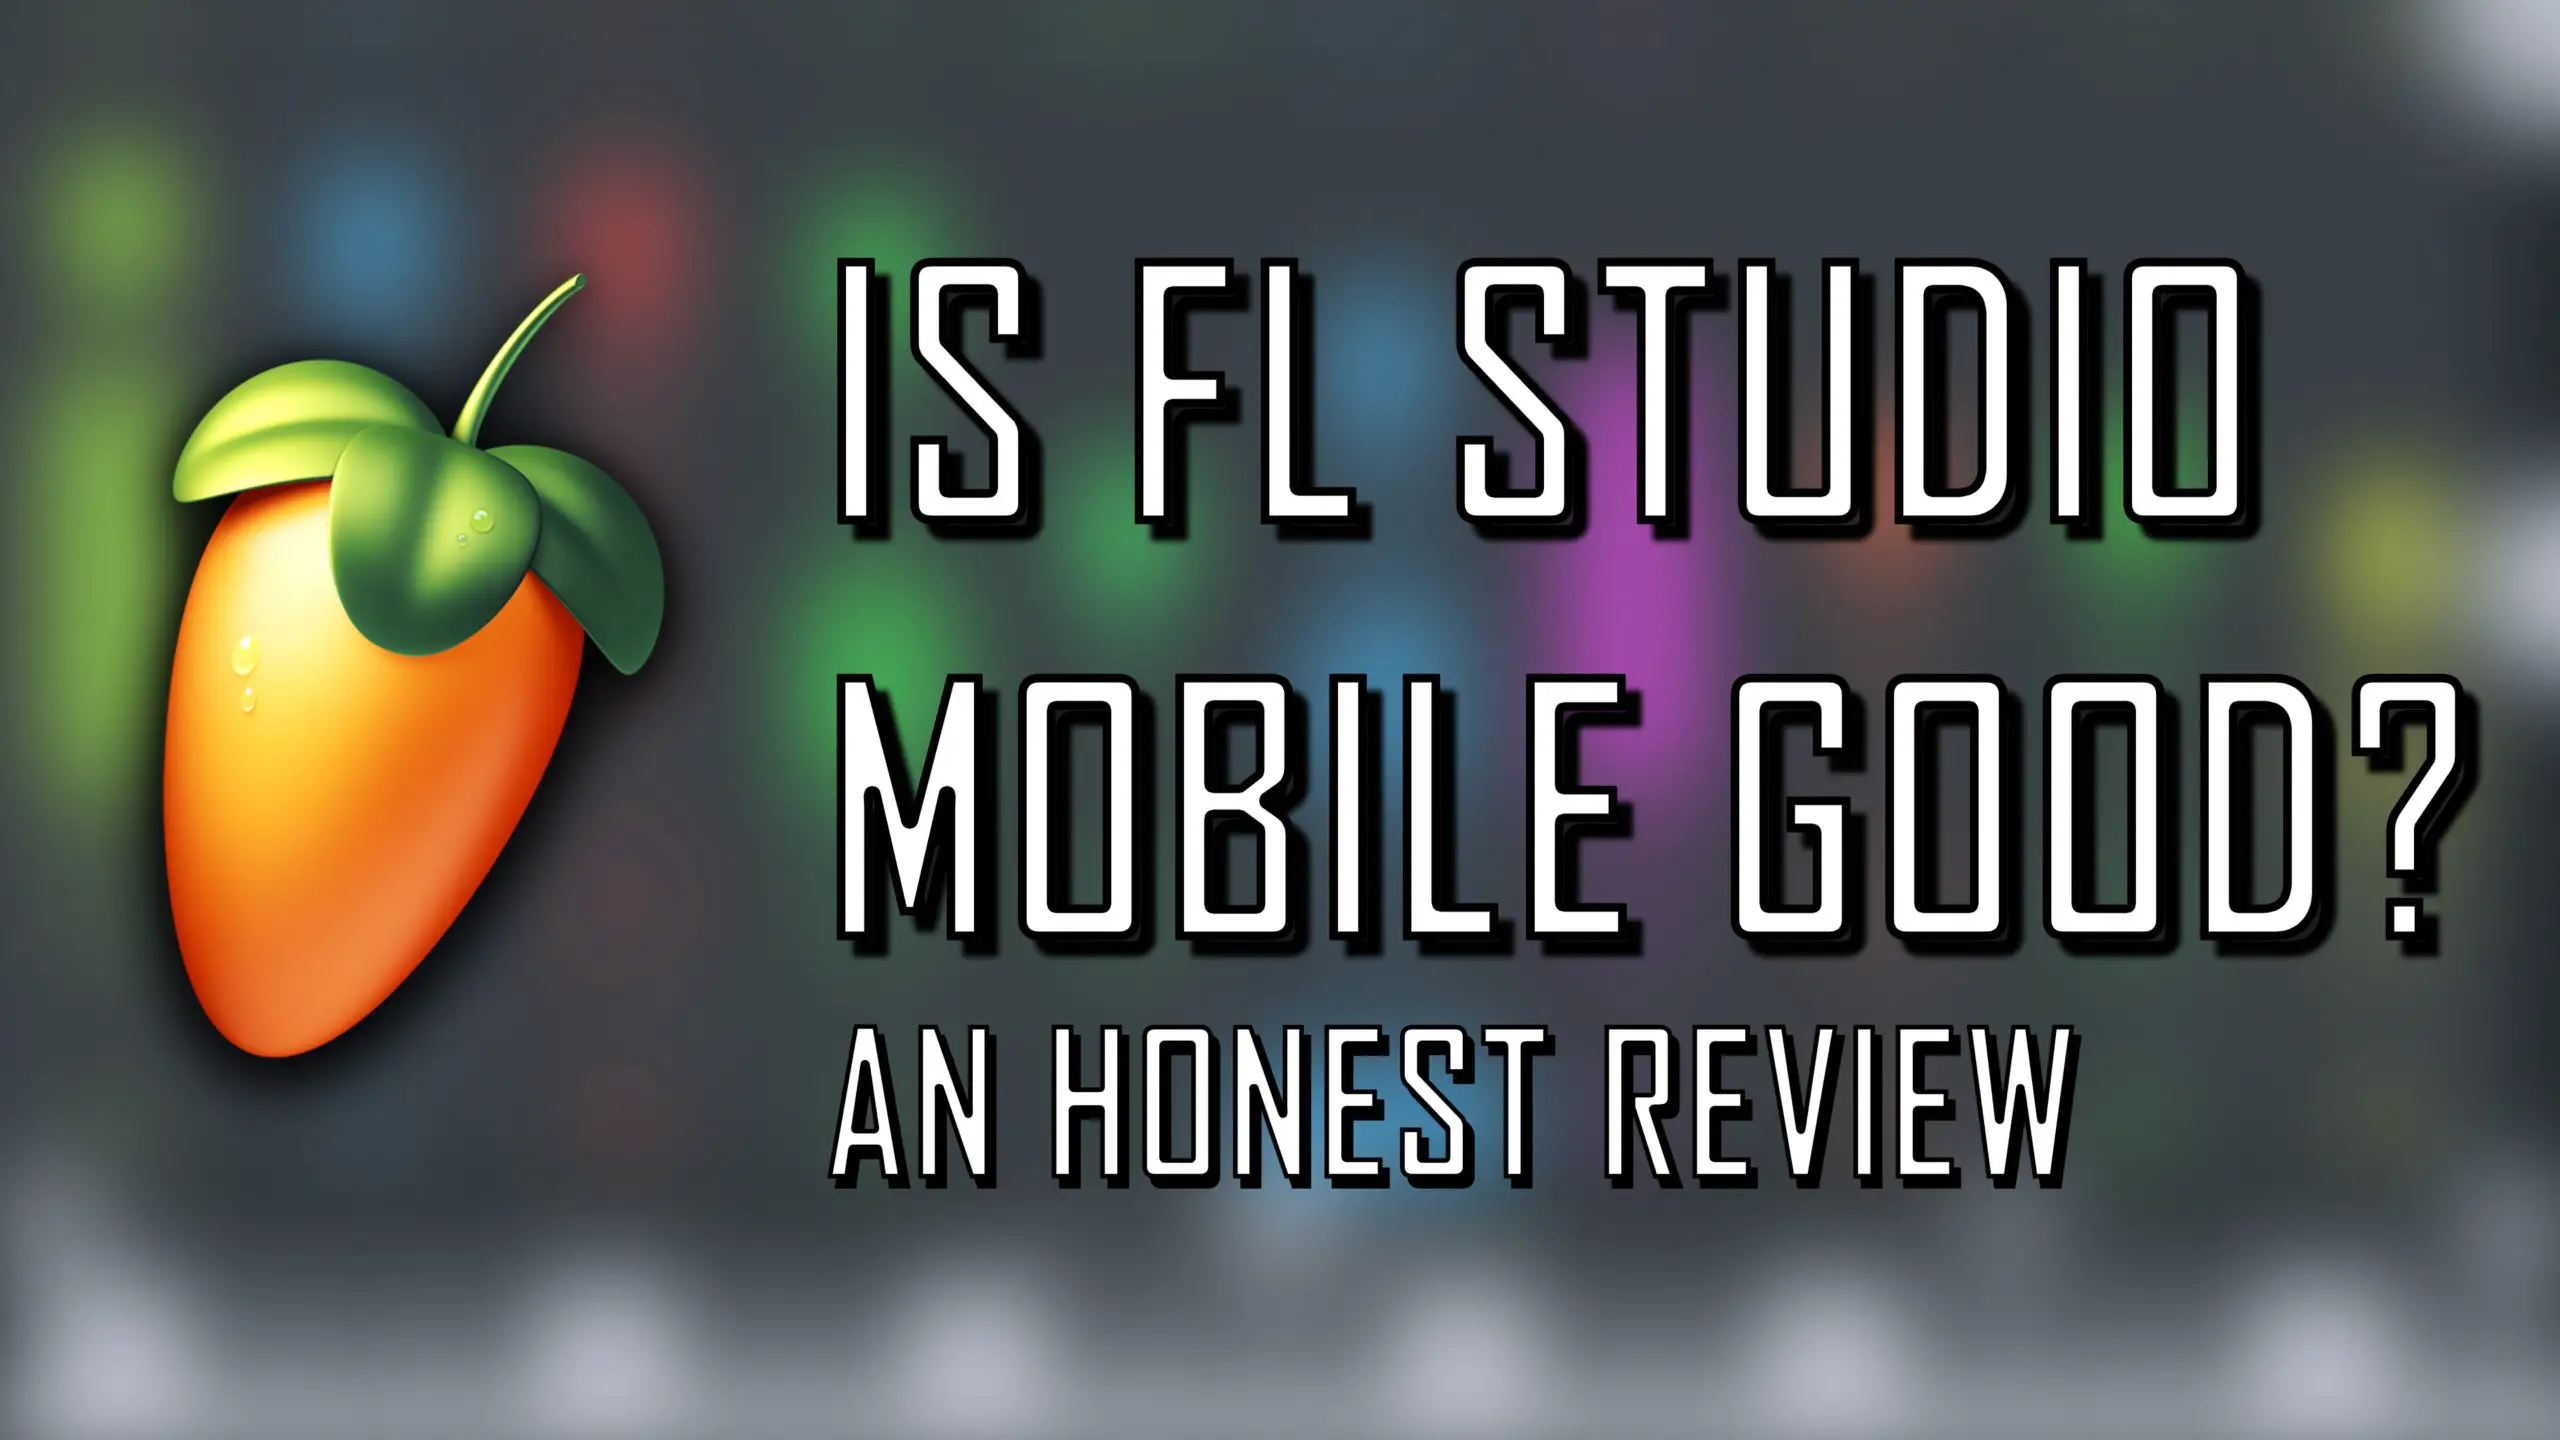 FL Studio Mobile - Chill lofi mobile review! 